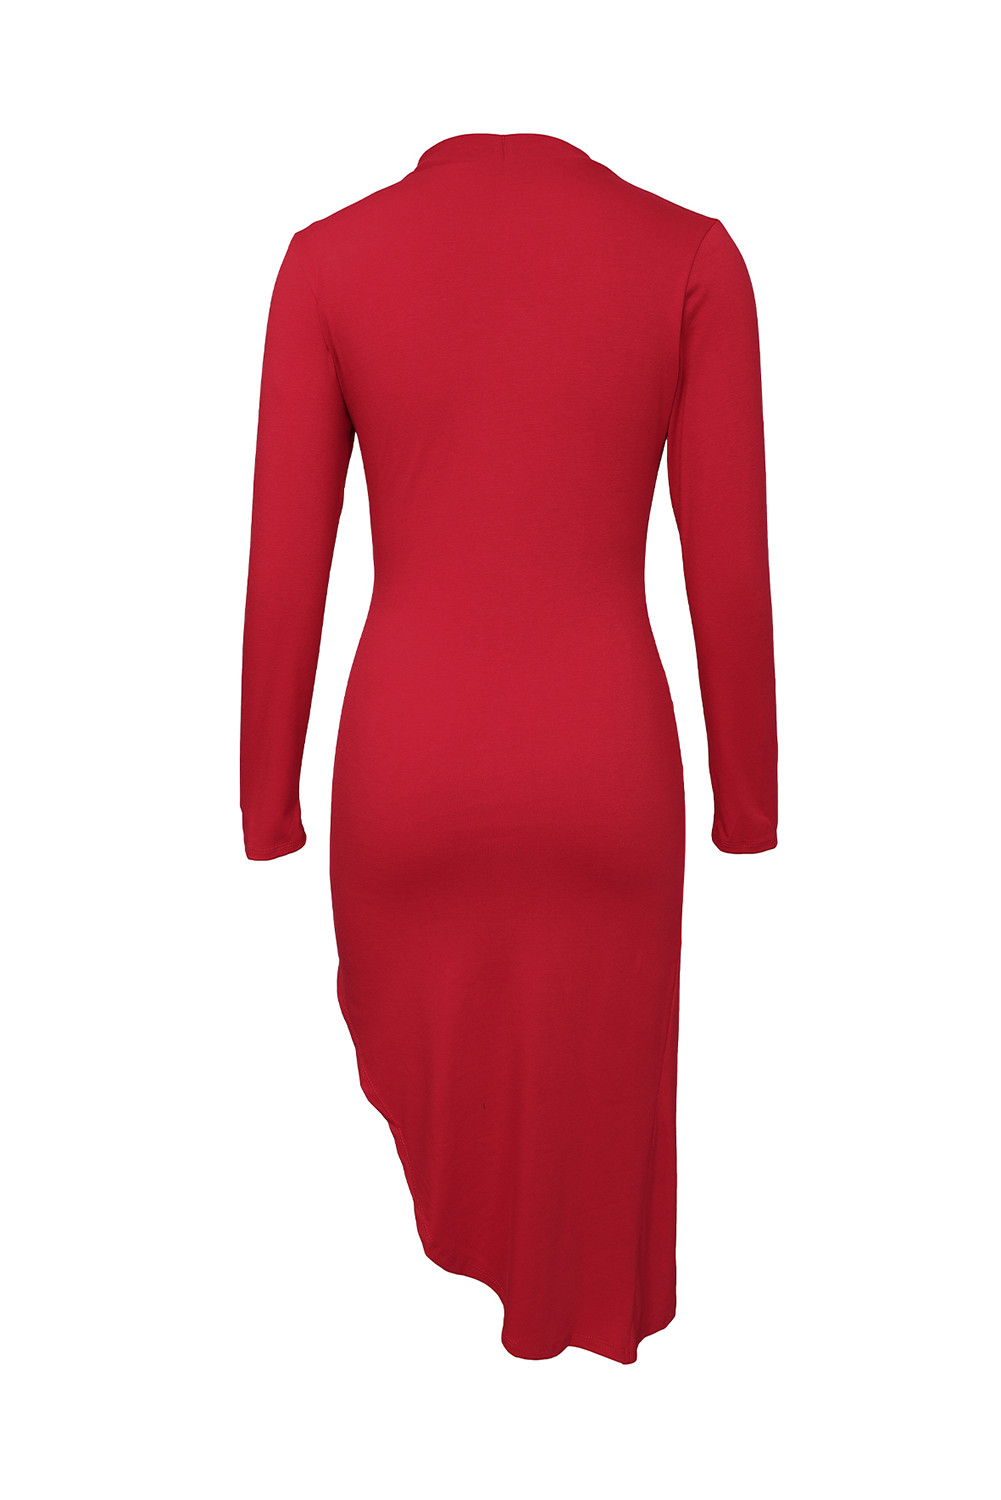 红色时尚优雅半高领长袖扭结开衩紧身连衣裙 LC618017